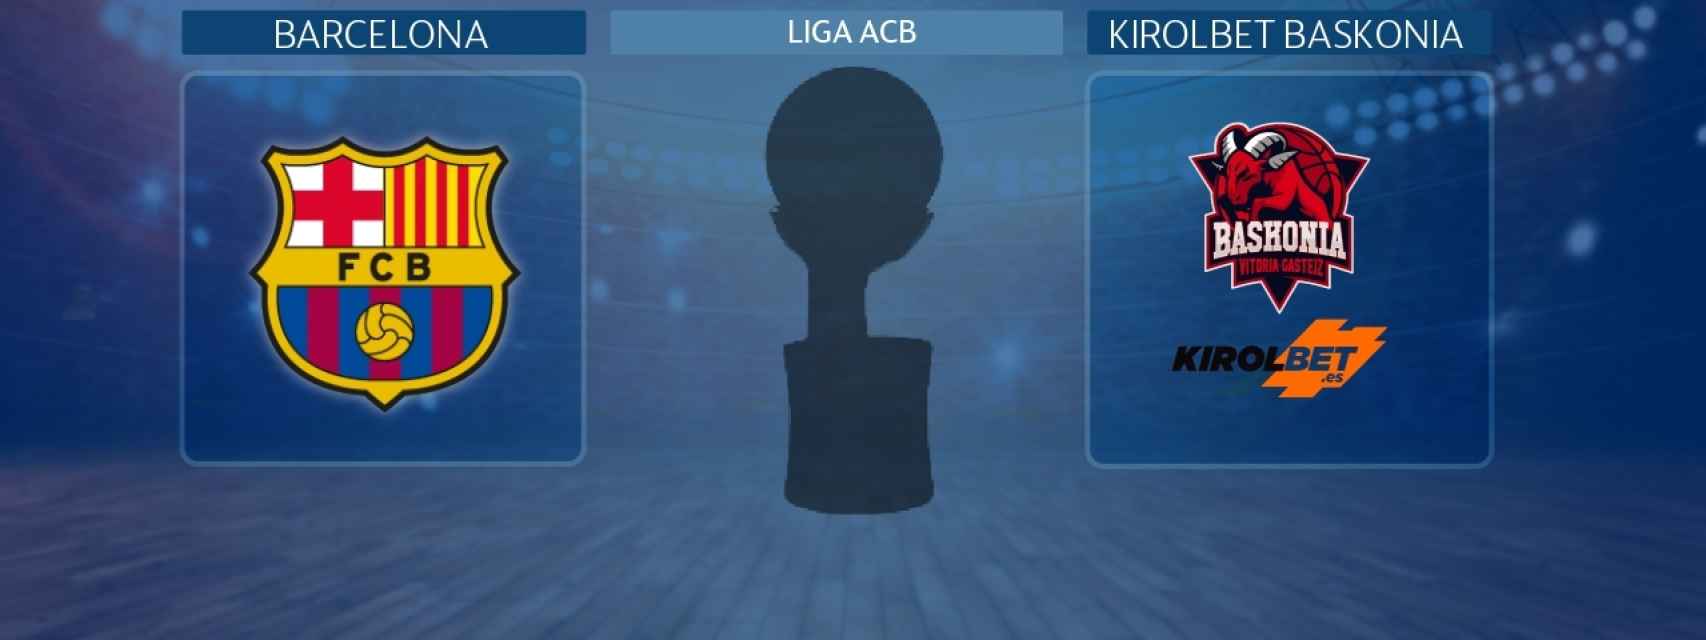 Barcelona - Kirolbet Baskonia, partido de Liga ACB